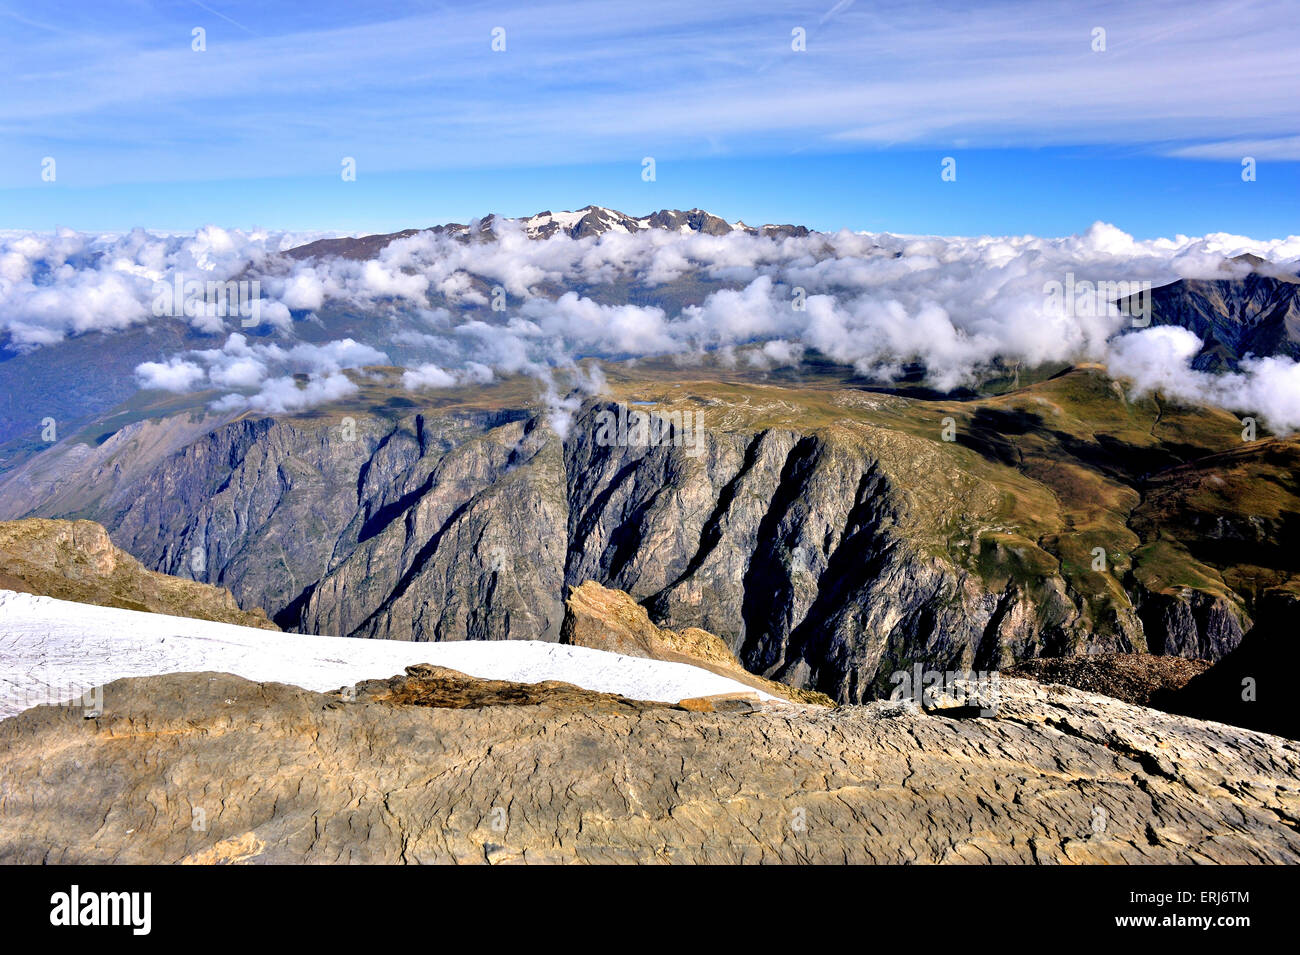 Vista panoramica dell'altopiano d' Emparis e la catena montuosa delle Grandes Rousses delle Alpi Savoy in background Foto Stock